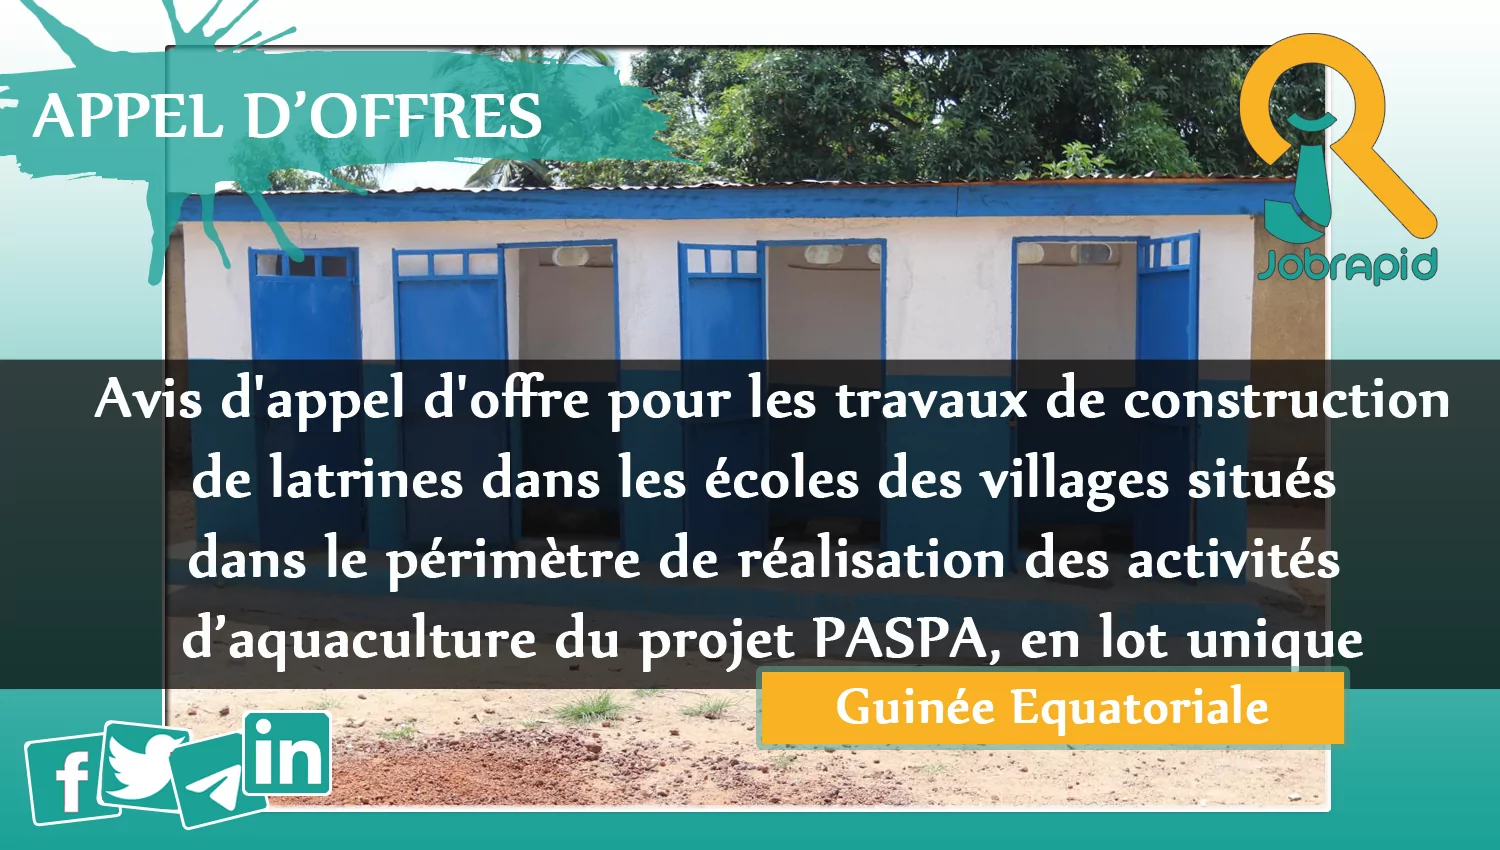 Avis d’appel d’offre pour les travaux de construction de latrines dans les écoles des villages situés dans le périmètre de réalisation des activités d’aquaculture du projet PASPA, en lot unique, Guinée Equatoriale